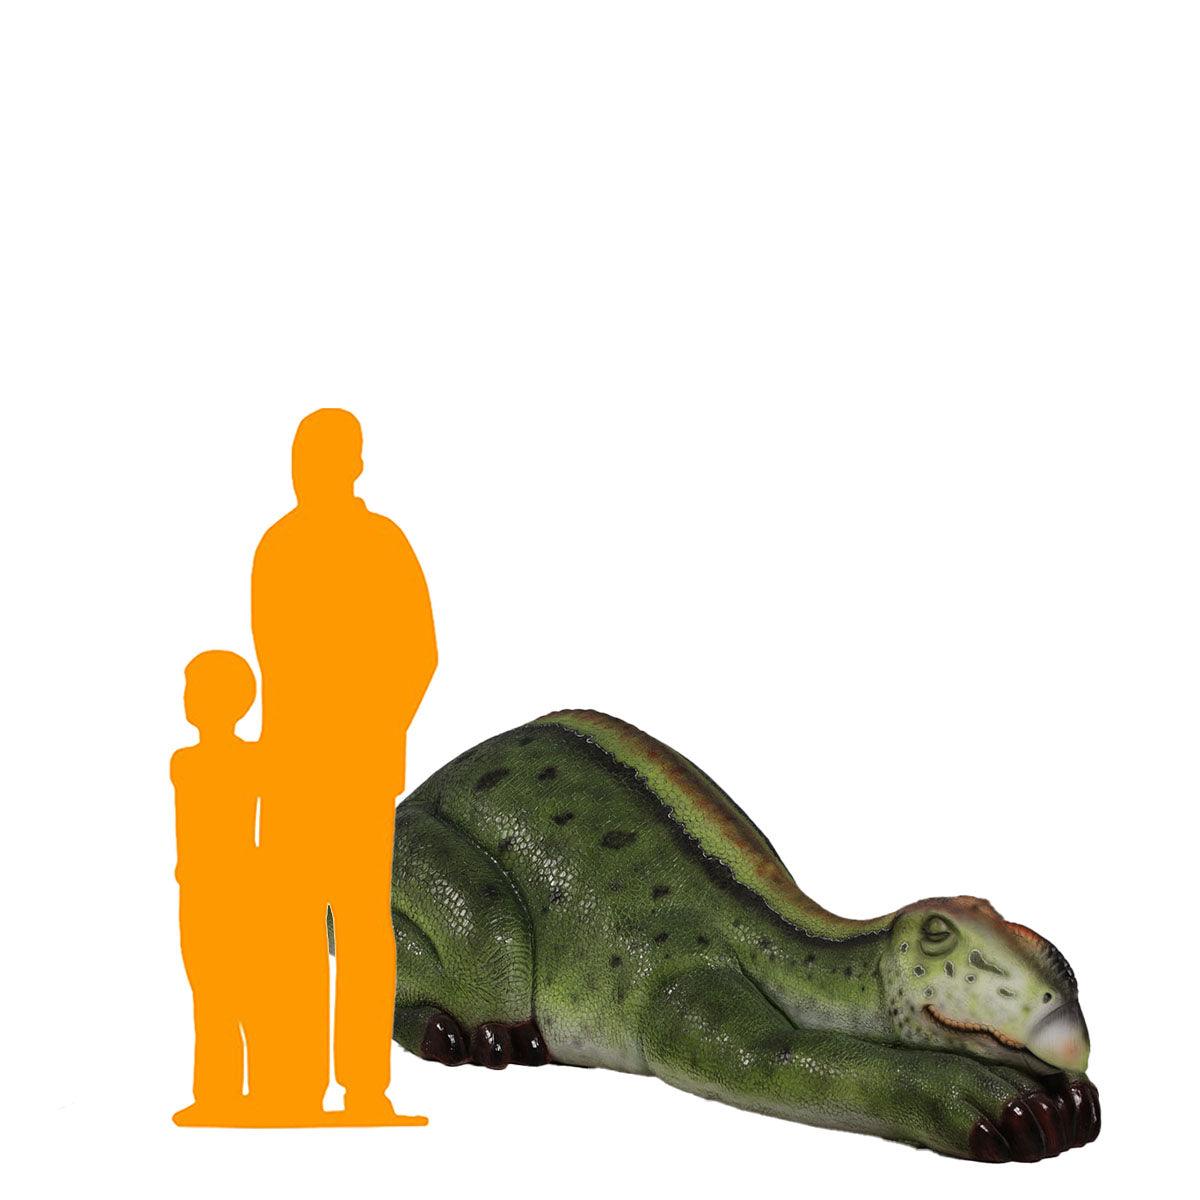 Sleeping Muttaburrasaurus Dinosaur Statue - LM Treasures Prop Rentals 